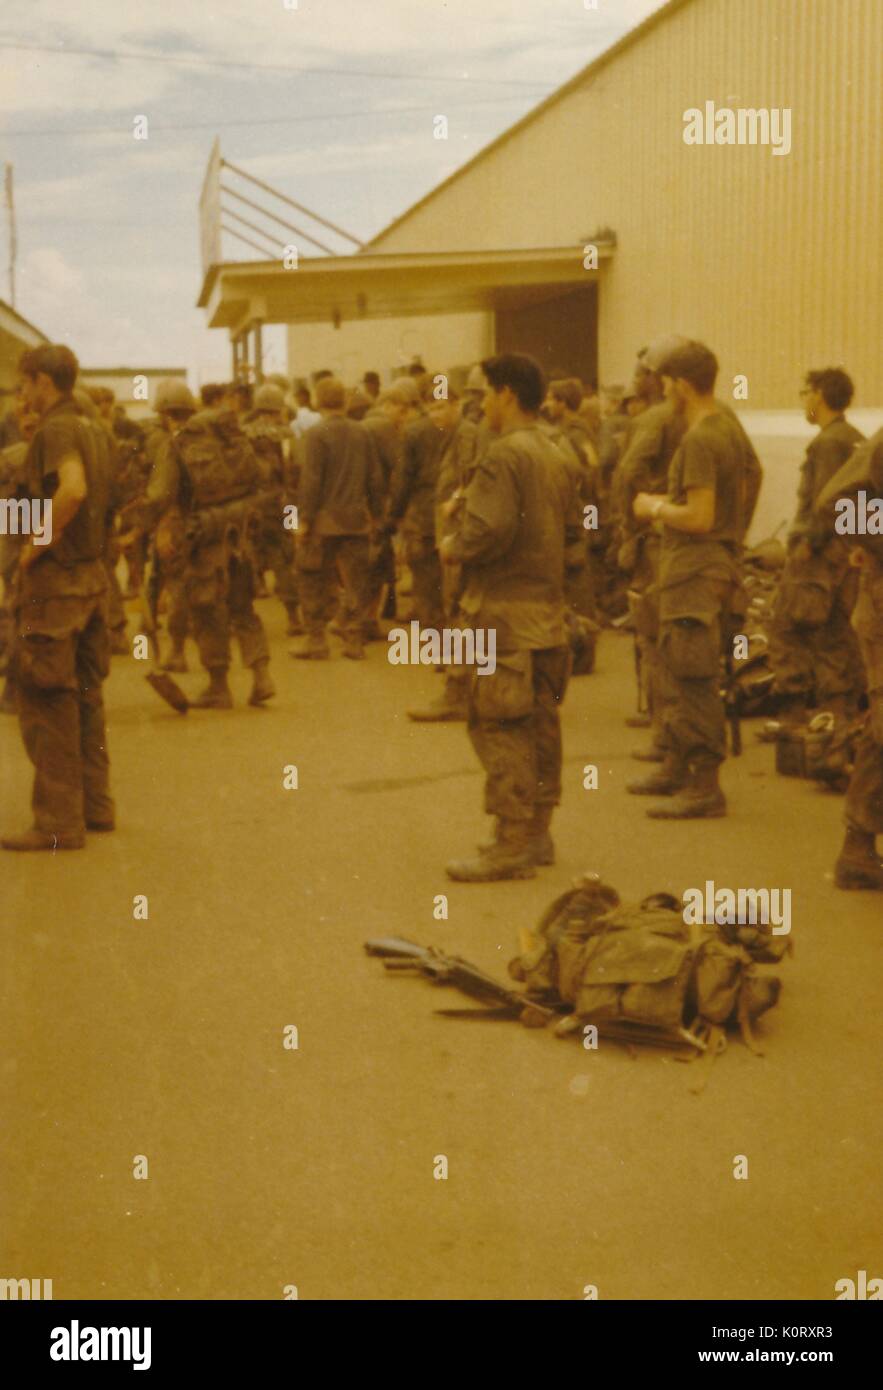 Eine große Gruppe von Soldaten in ihren Uniformen gesammelt wurden, zeigen alle in dieselbe Richtung, deren Bekämpfung Gangs gegen ein Gebäude, Vietnam, 1964 an die Seite gestellt wurde. Stockfoto